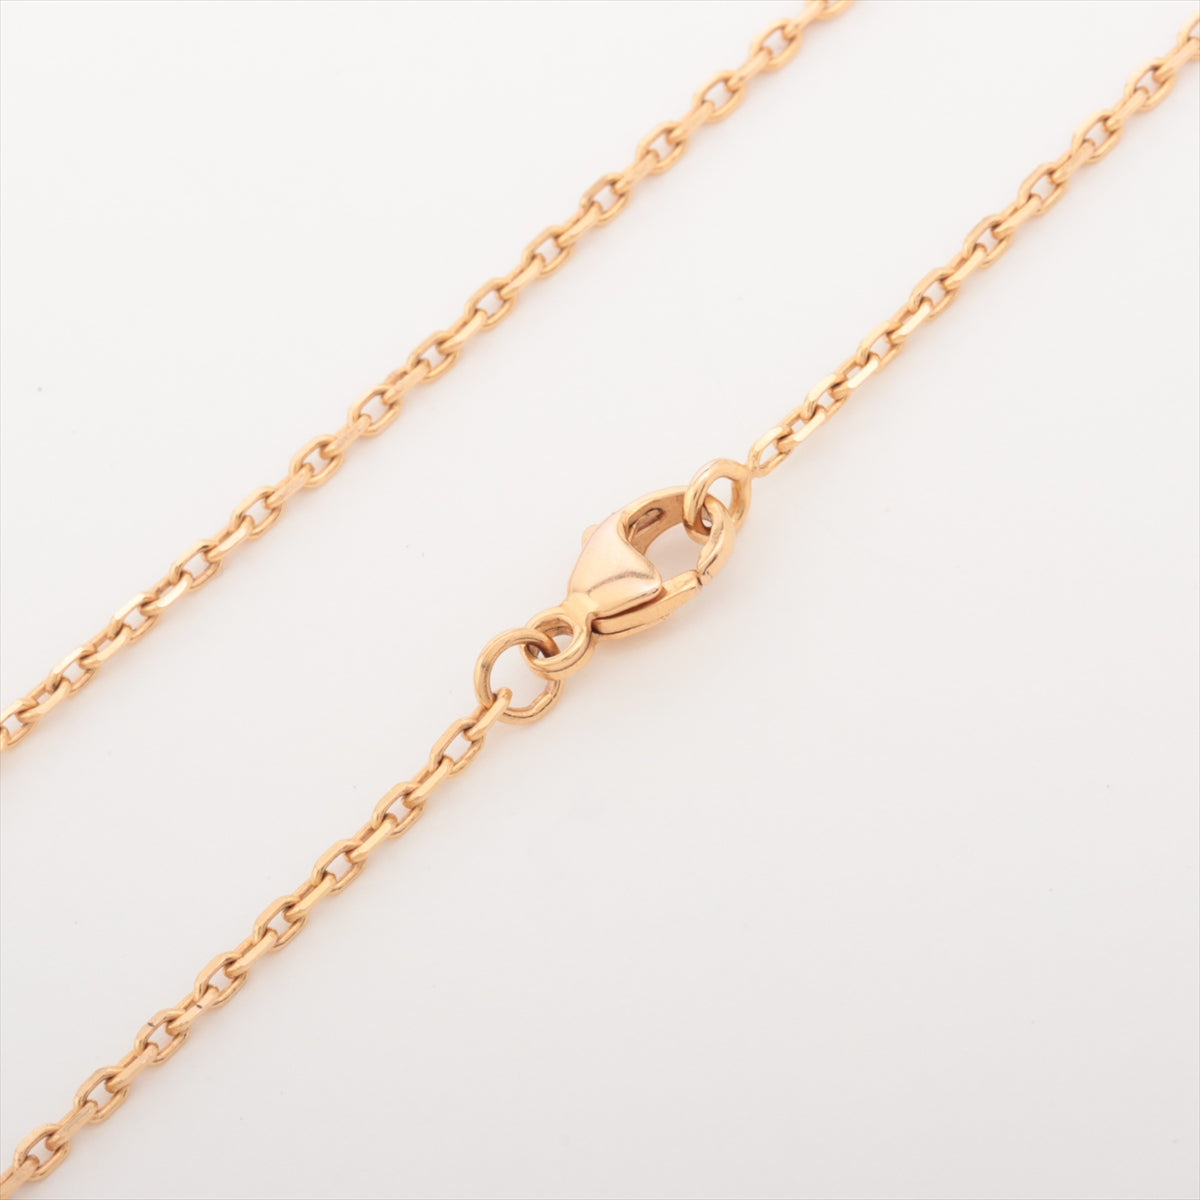 Hermès Pop ash Necklace GP Gold x pink